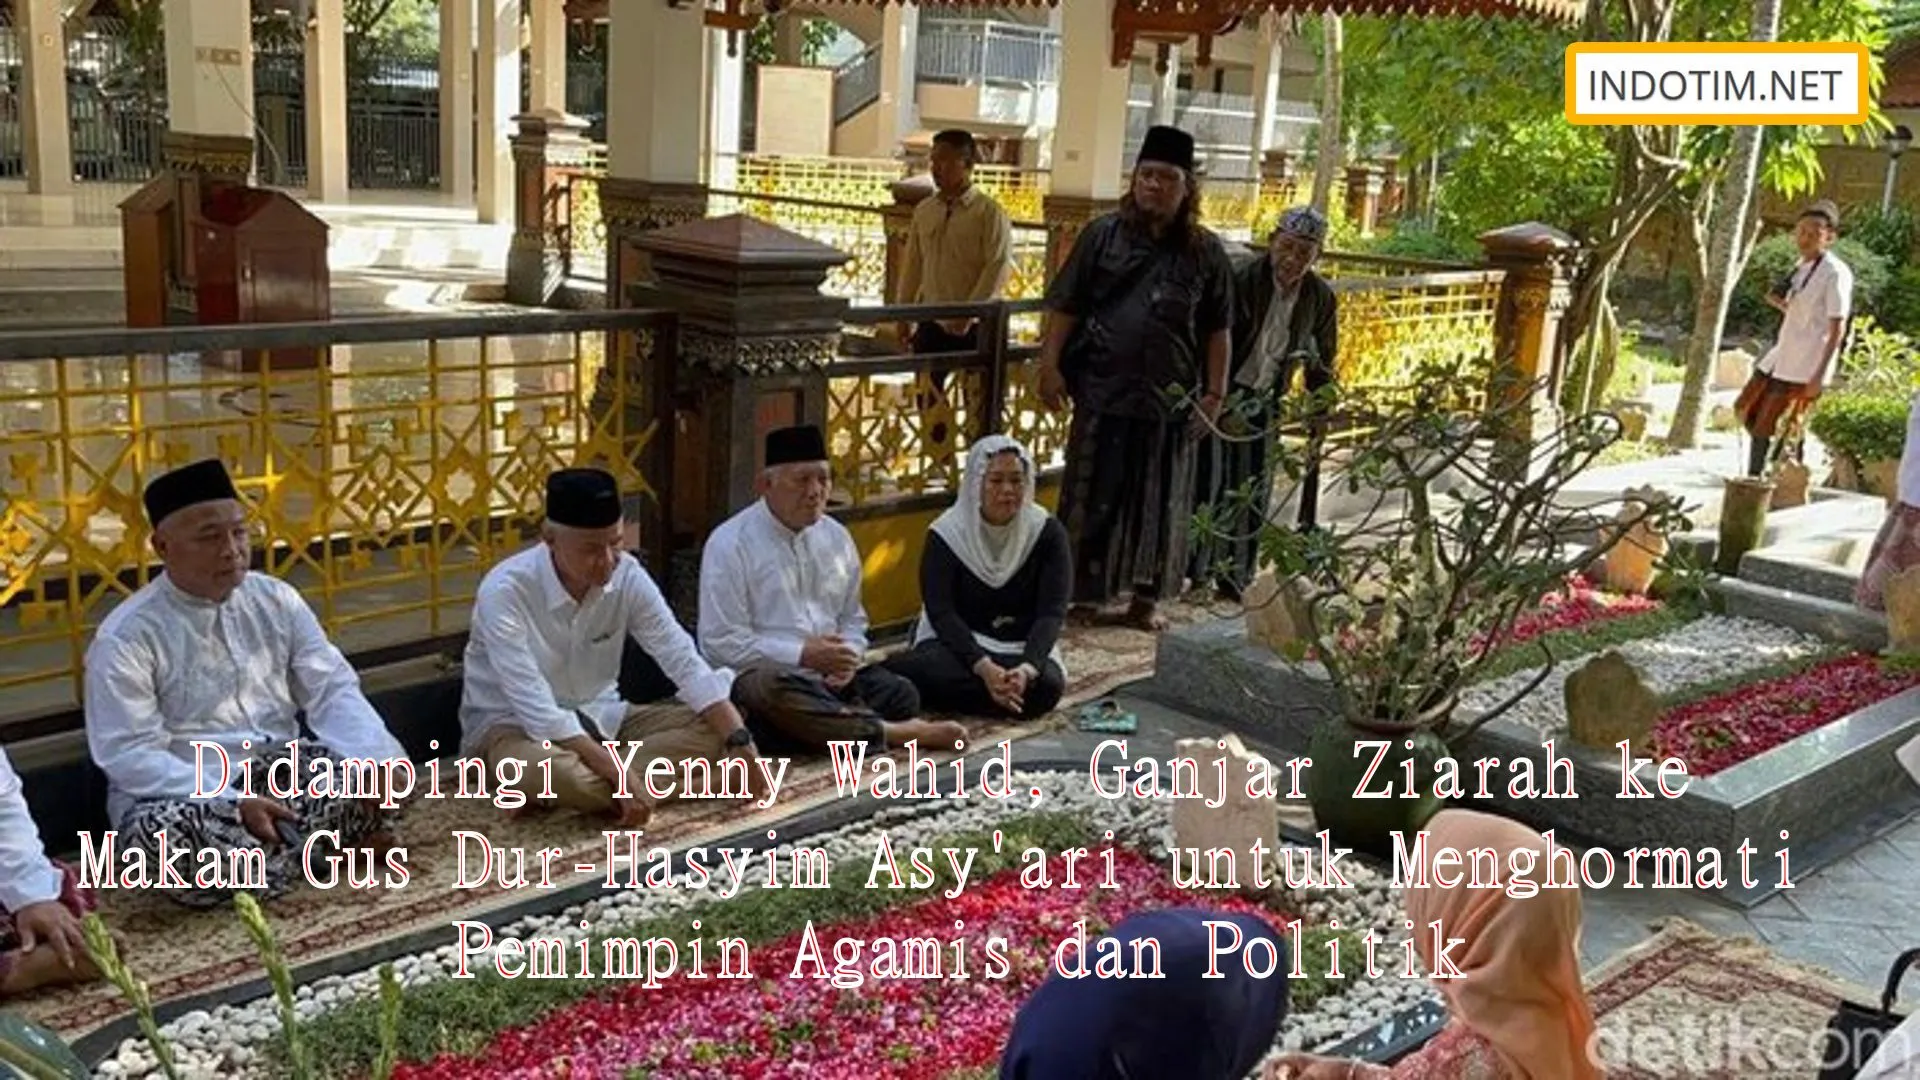 Didampingi Yenny Wahid, Ganjar Ziarah ke Makam Gus Dur-Hasyim Asy'ari untuk Menghormati Pemimpin Agamis dan Politik